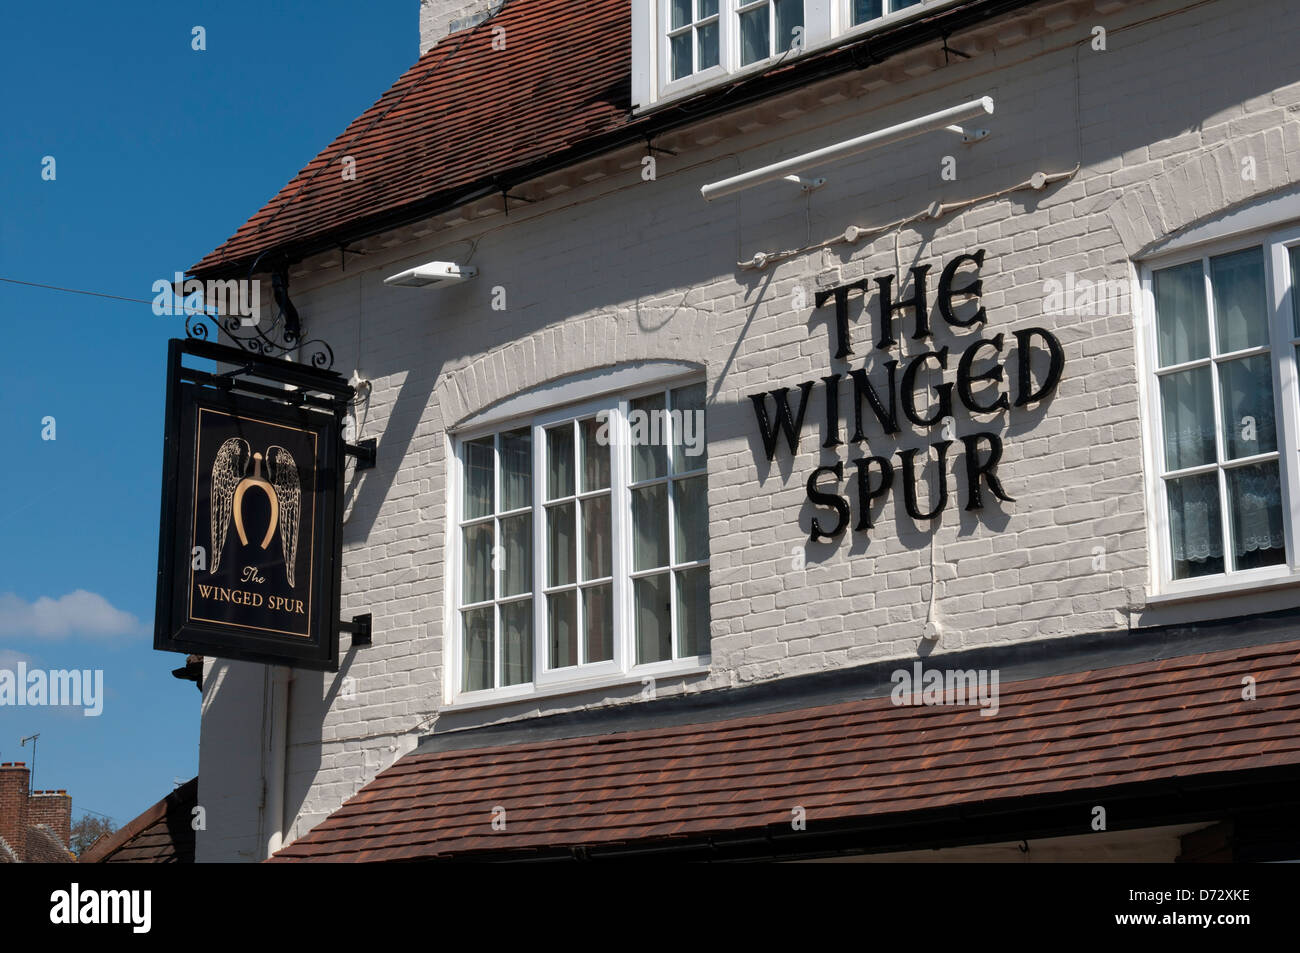 Il sperone alato pub, Ullenhall, Warwickshire, Inghilterra, Regno Unito Foto Stock